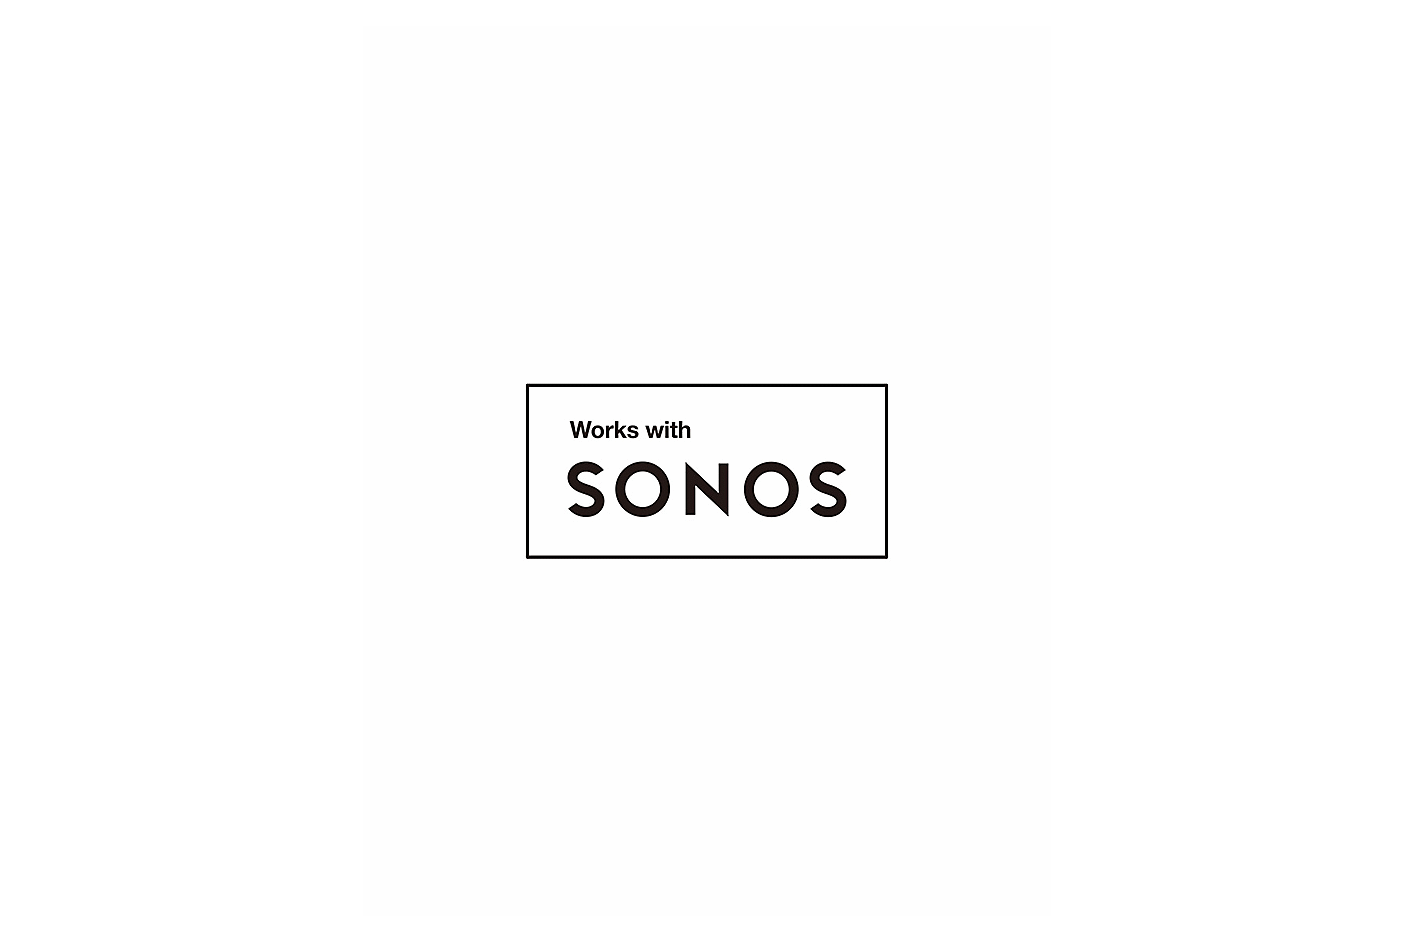 Εικόνα λογοτύπου Works with Sonos